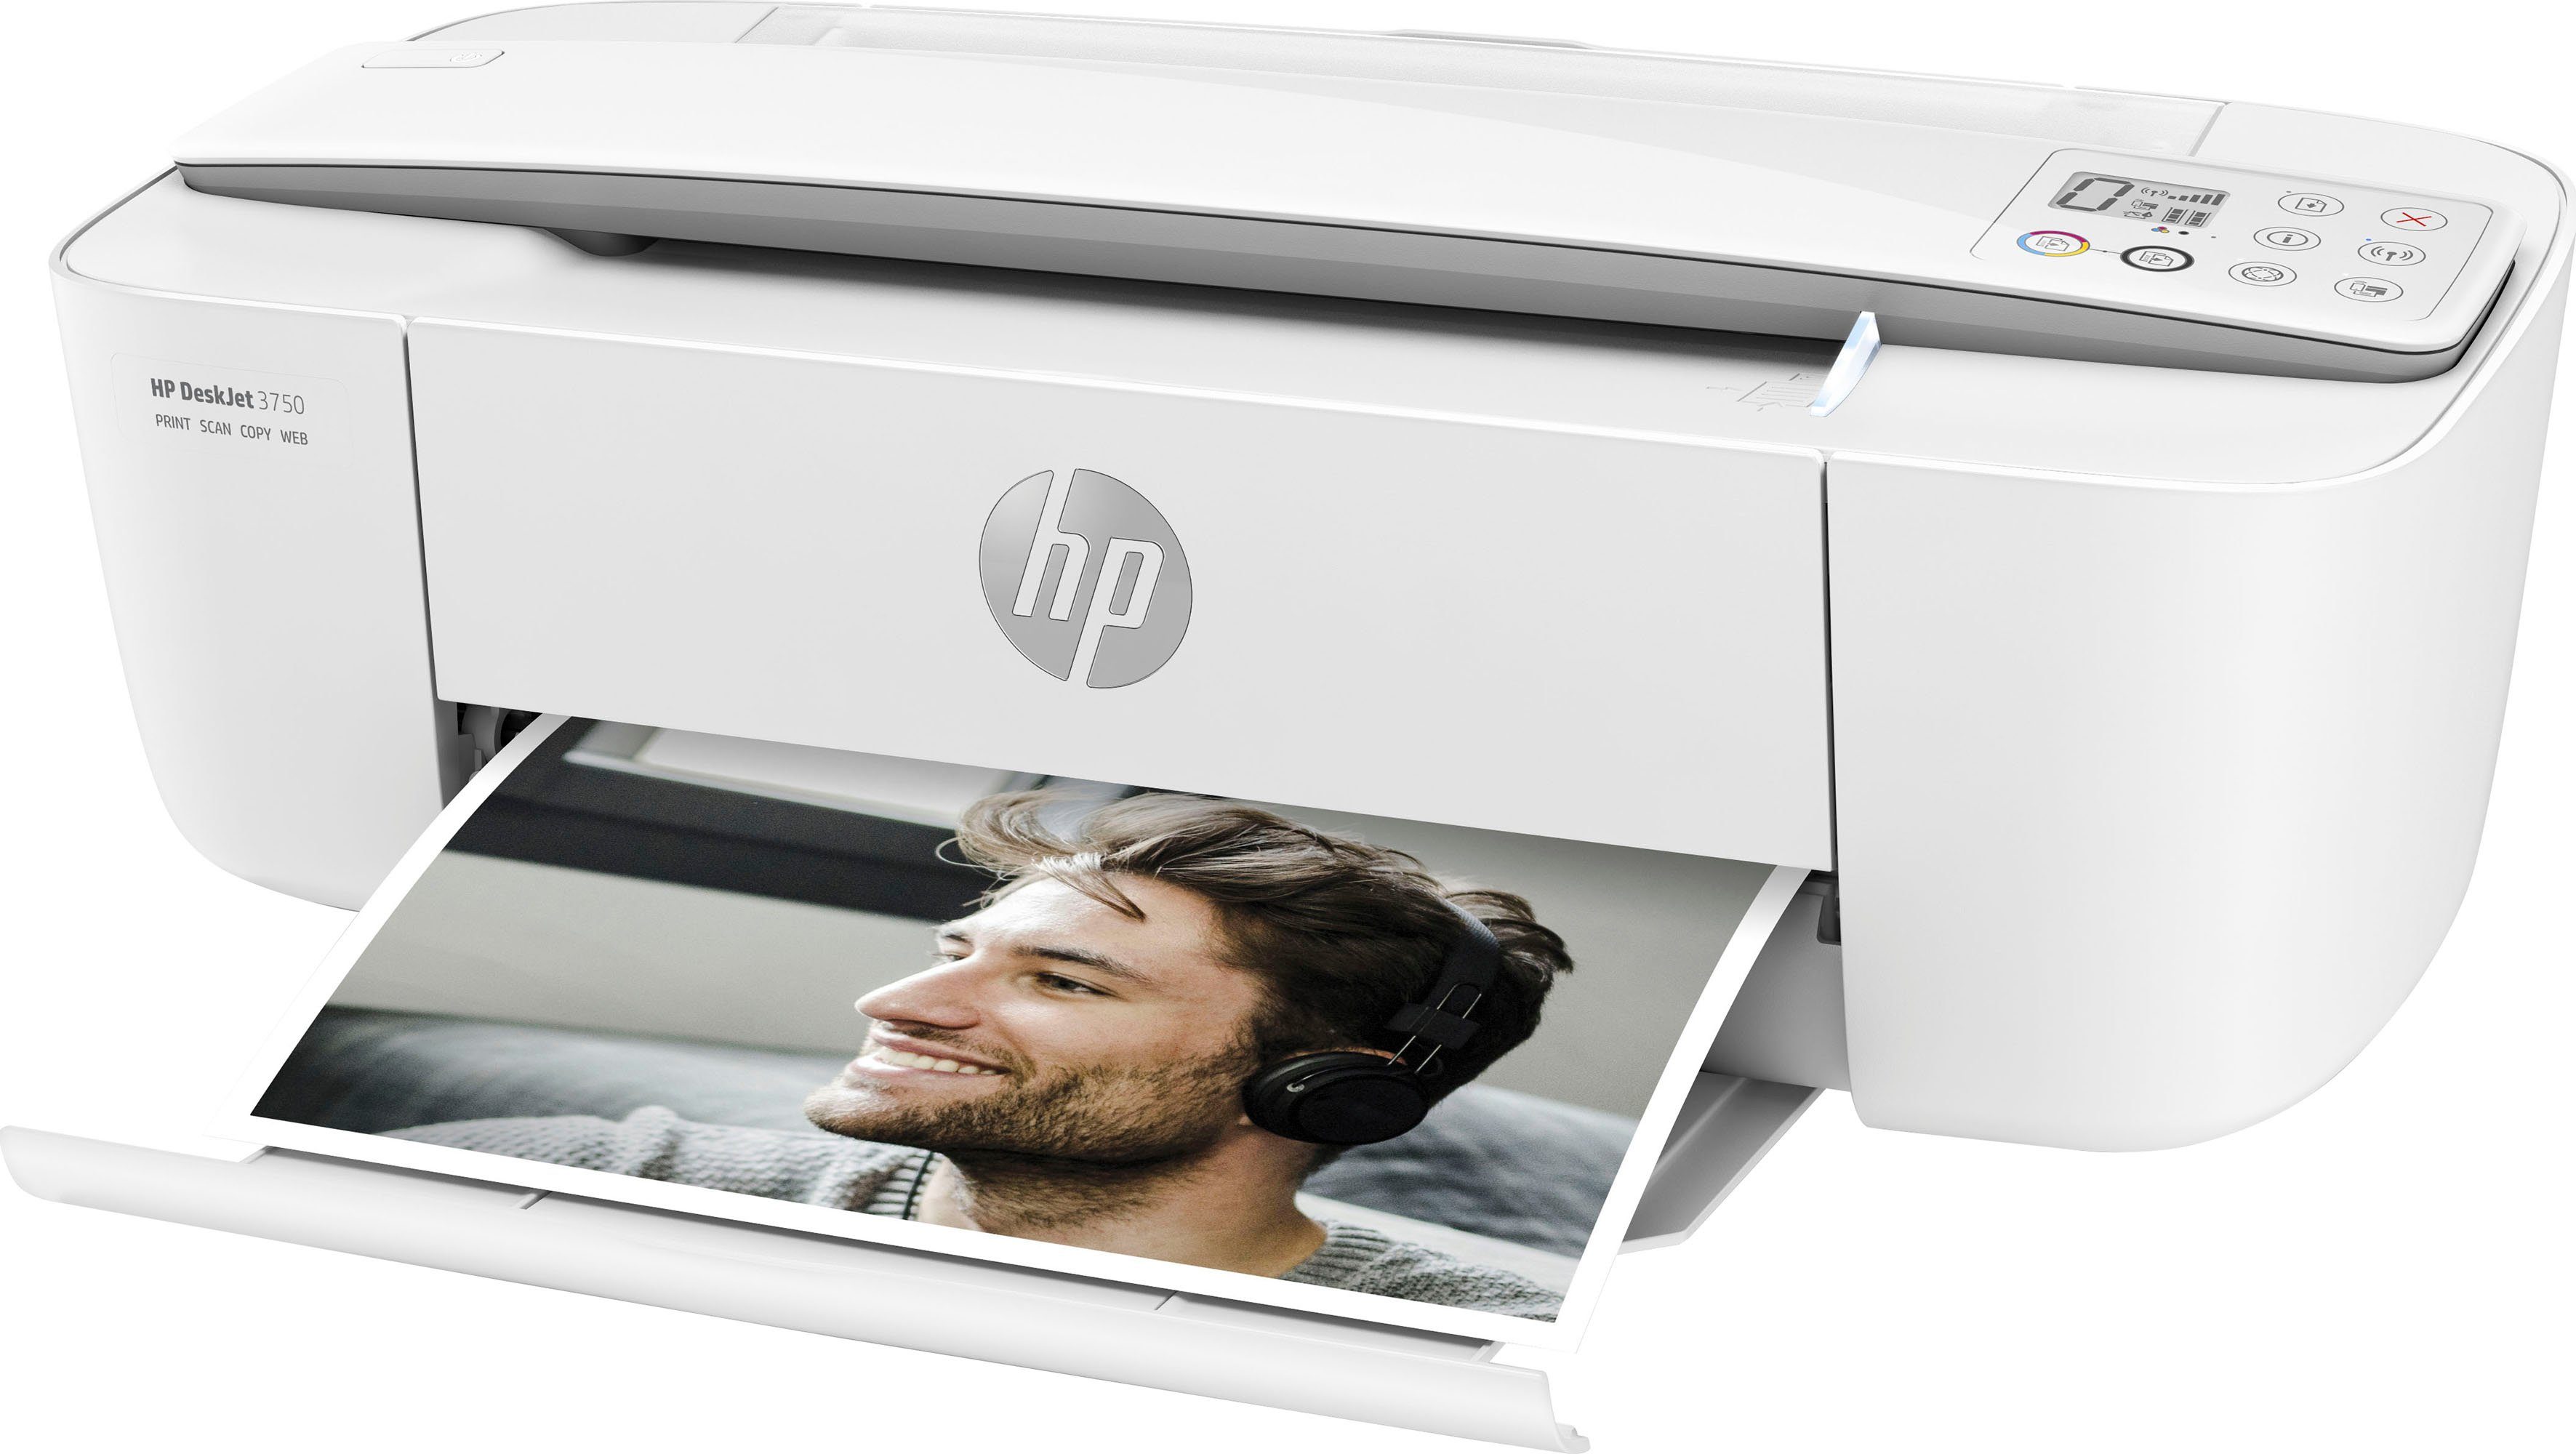 (Wi-Fi), HP+ 3750 (WLAN Drucker DeskJet Instant HP Ink Multifunktionsdrucker, kompatibel)